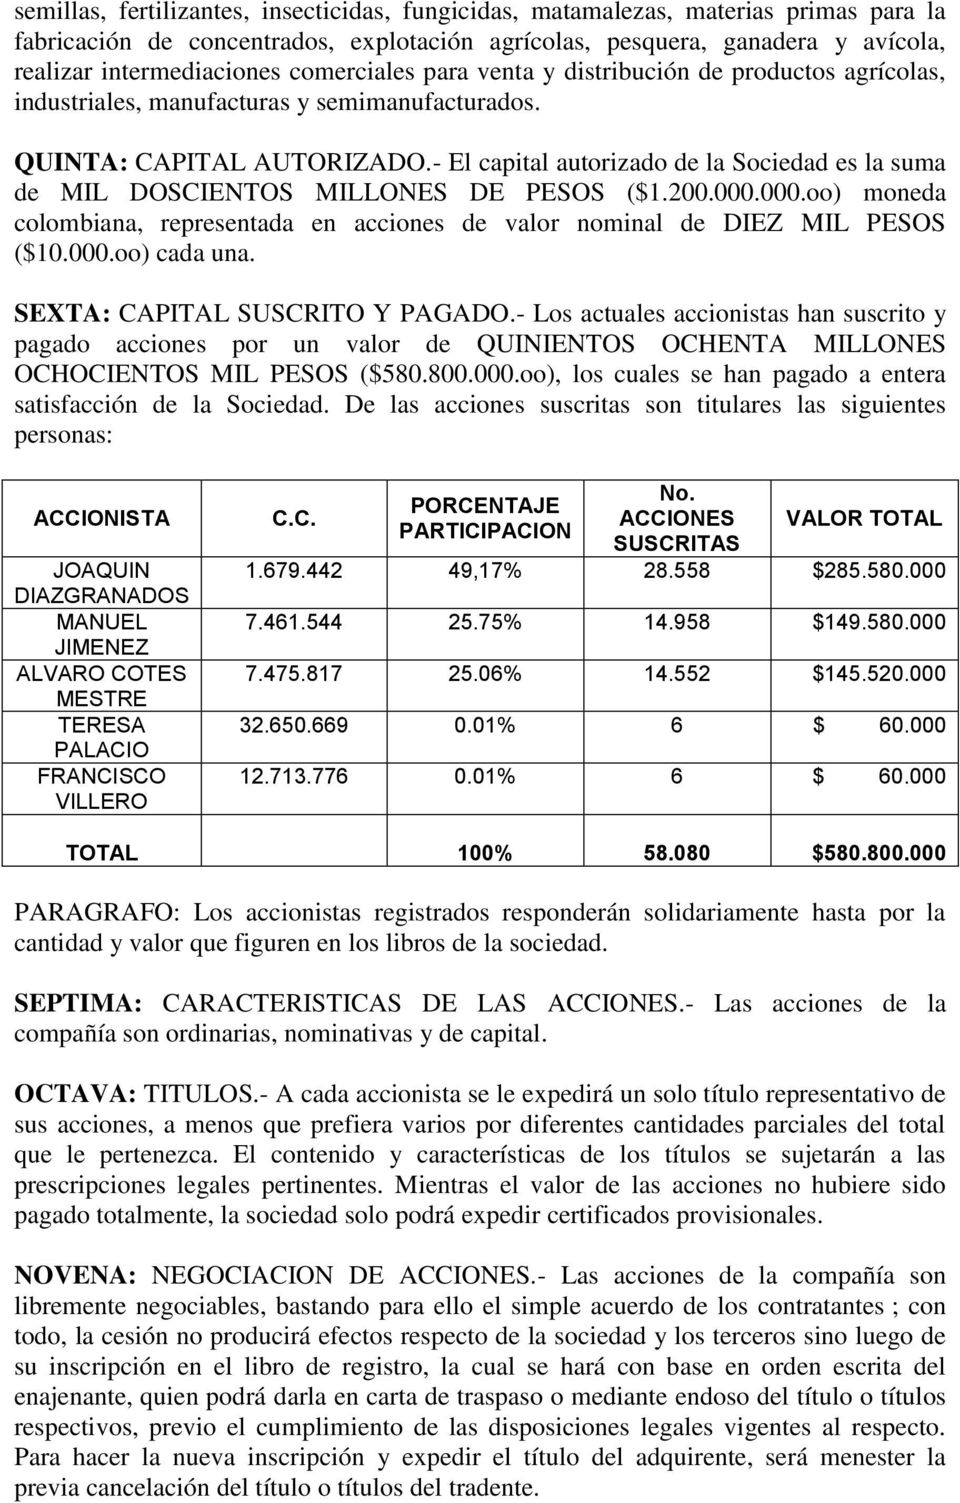 - El capital autorizado de la Sociedad es la suma de MIL DOSCIENTOS MILLONES DE PESOS ($1.200.000.000.oo) moneda colombiana, representada en acciones de valor nominal de DIEZ MIL PESOS ($10.000.oo) cada una.